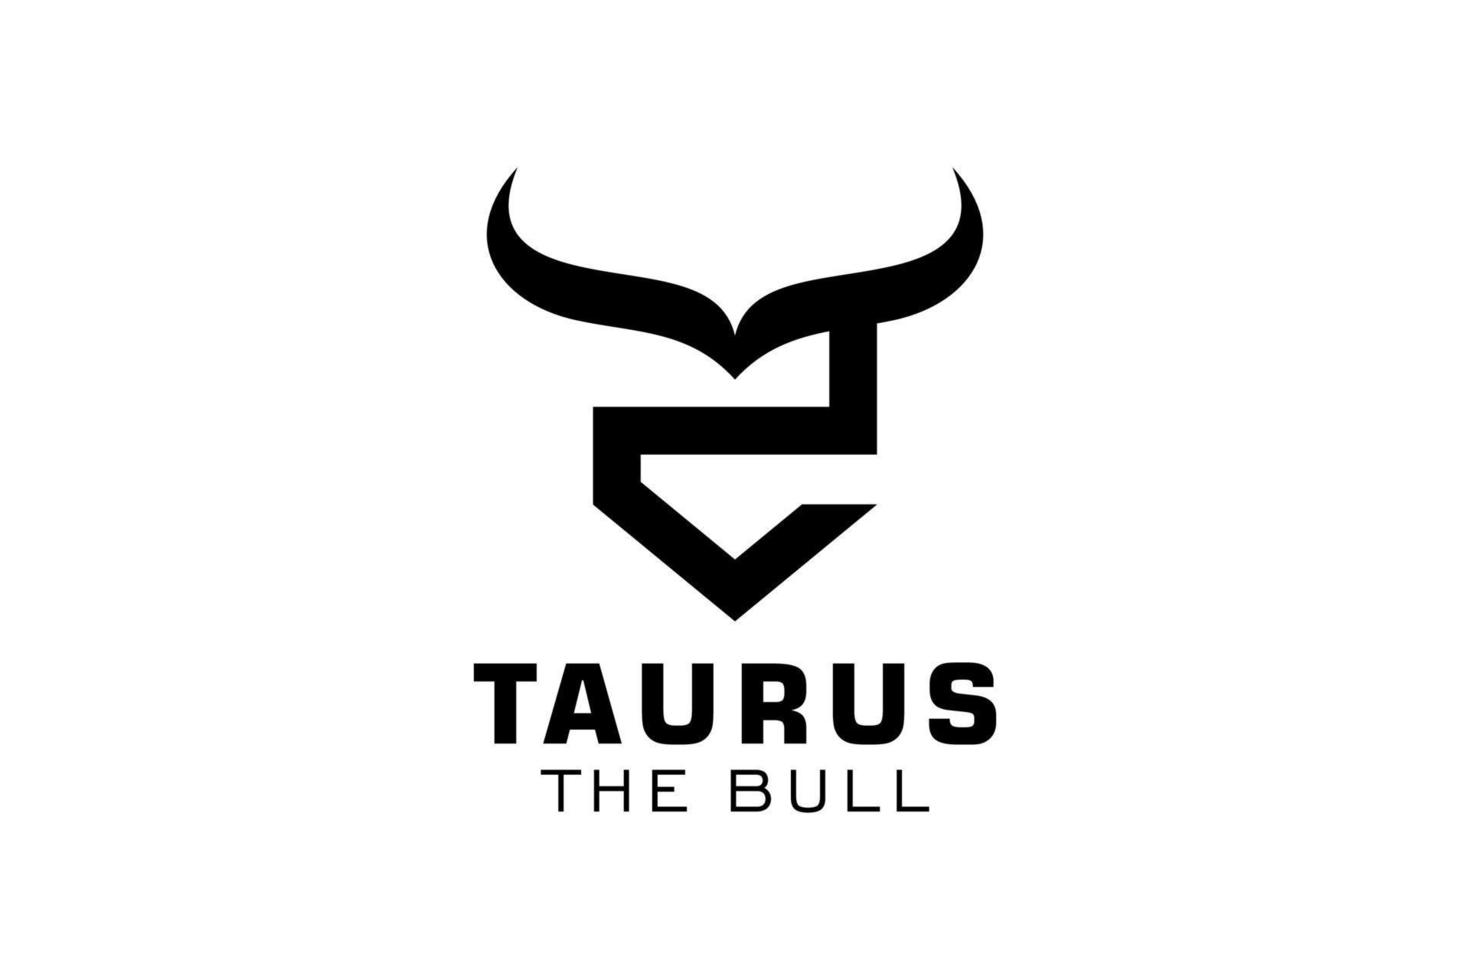 logotipo da letra z, logotipo do touro, logotipo da cabeça do touro, elemento de modelo de design do logotipo do monograma vetor